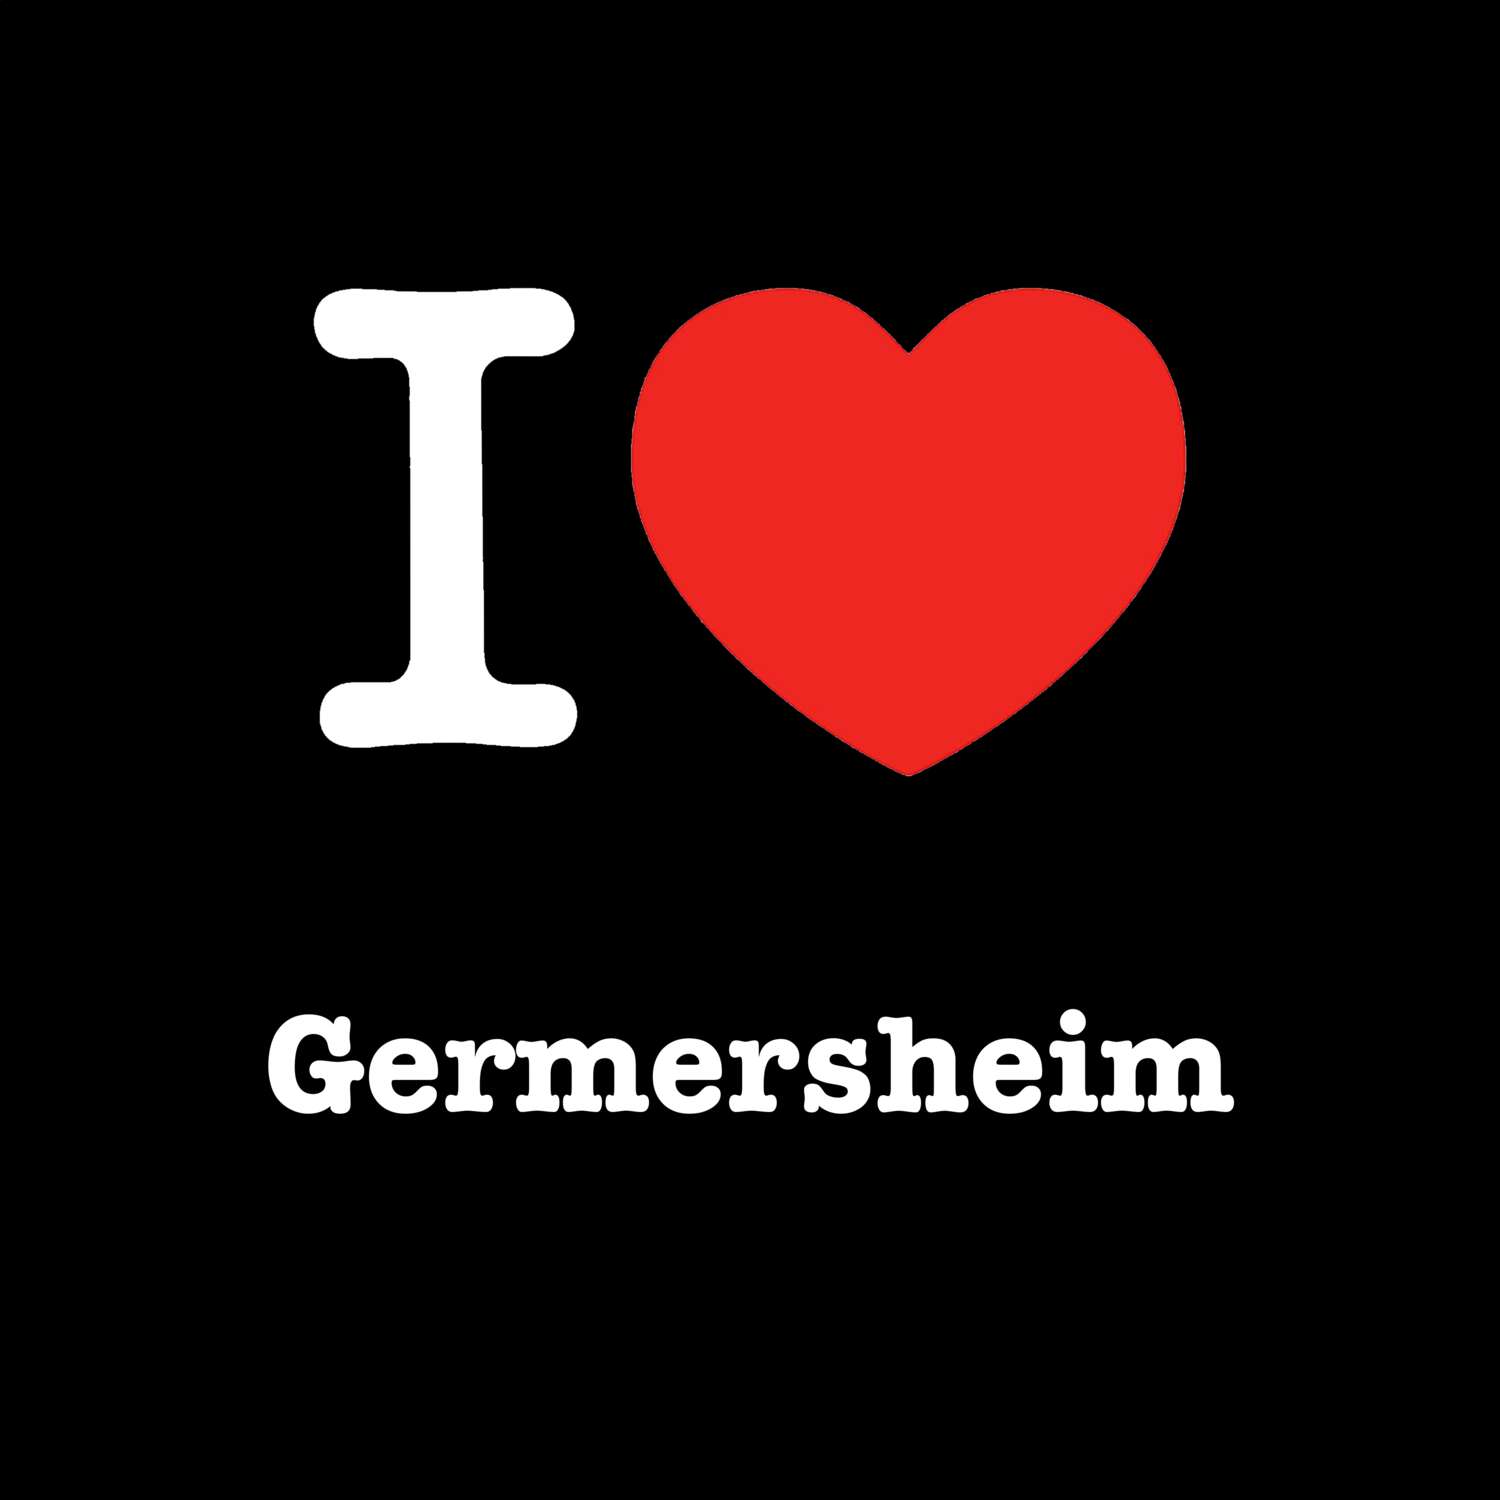 Germersheim T-Shirt »I love«